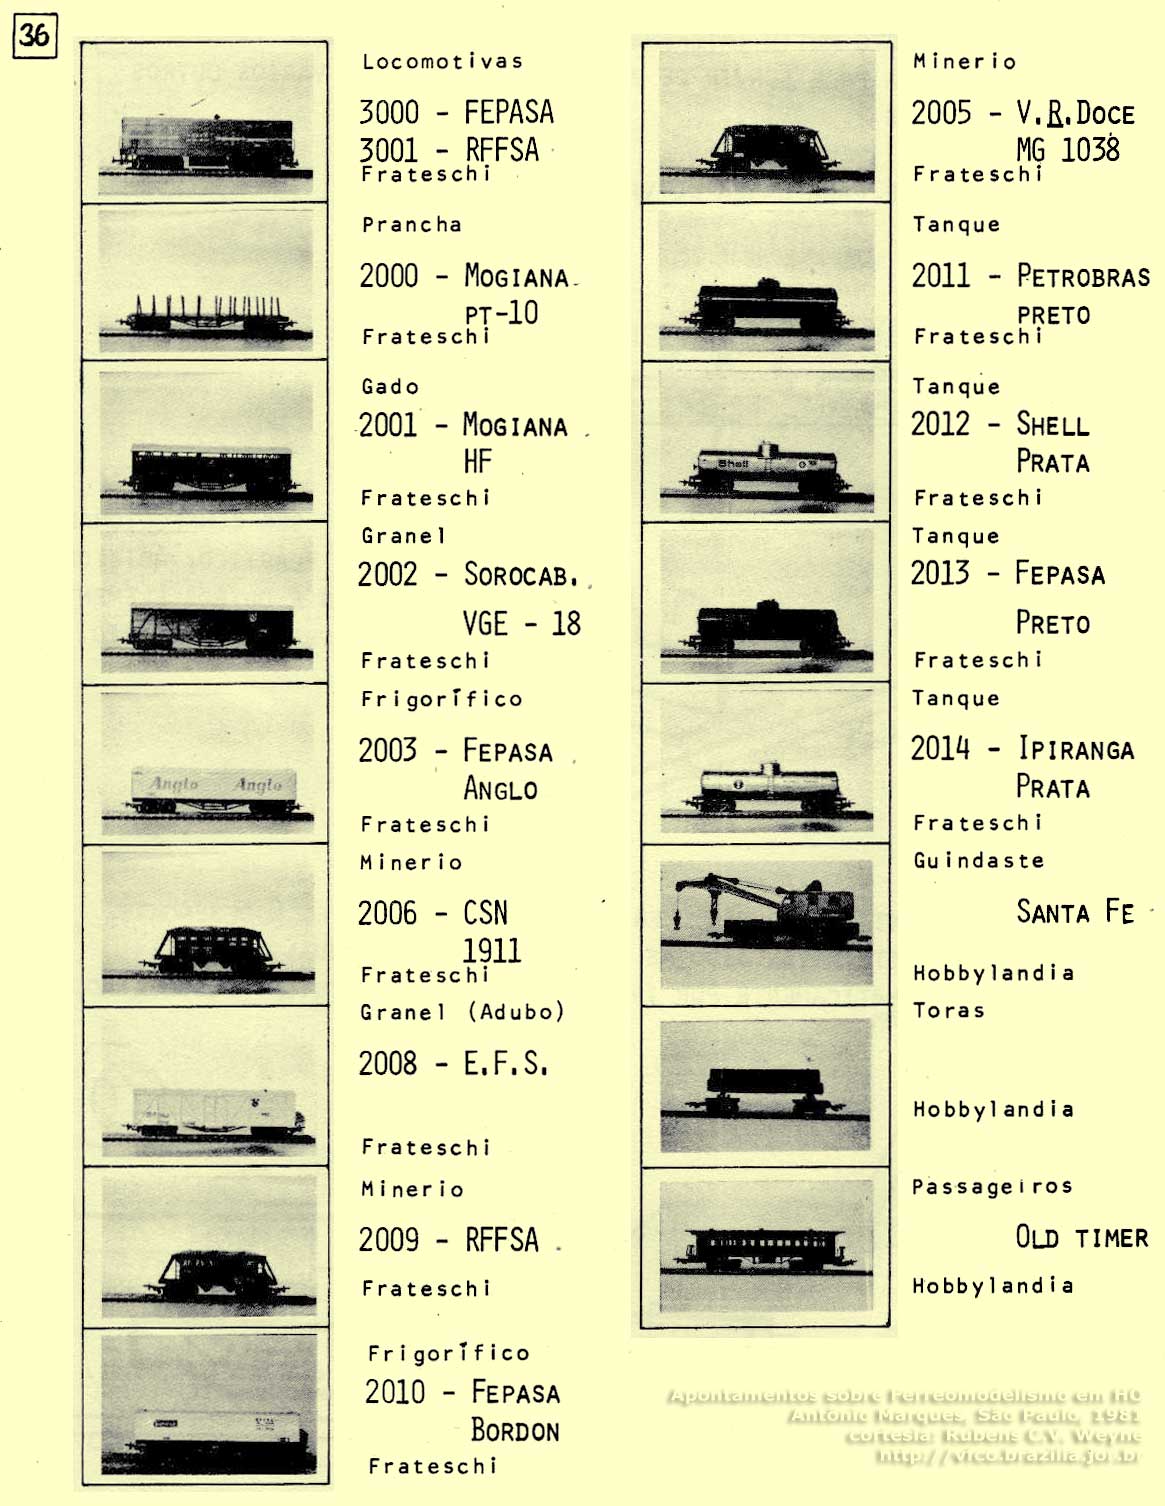 Apontamentos sobre Ferreomodelismo em HO | página 36 - vagões e locomotivas disponíveis em 1981